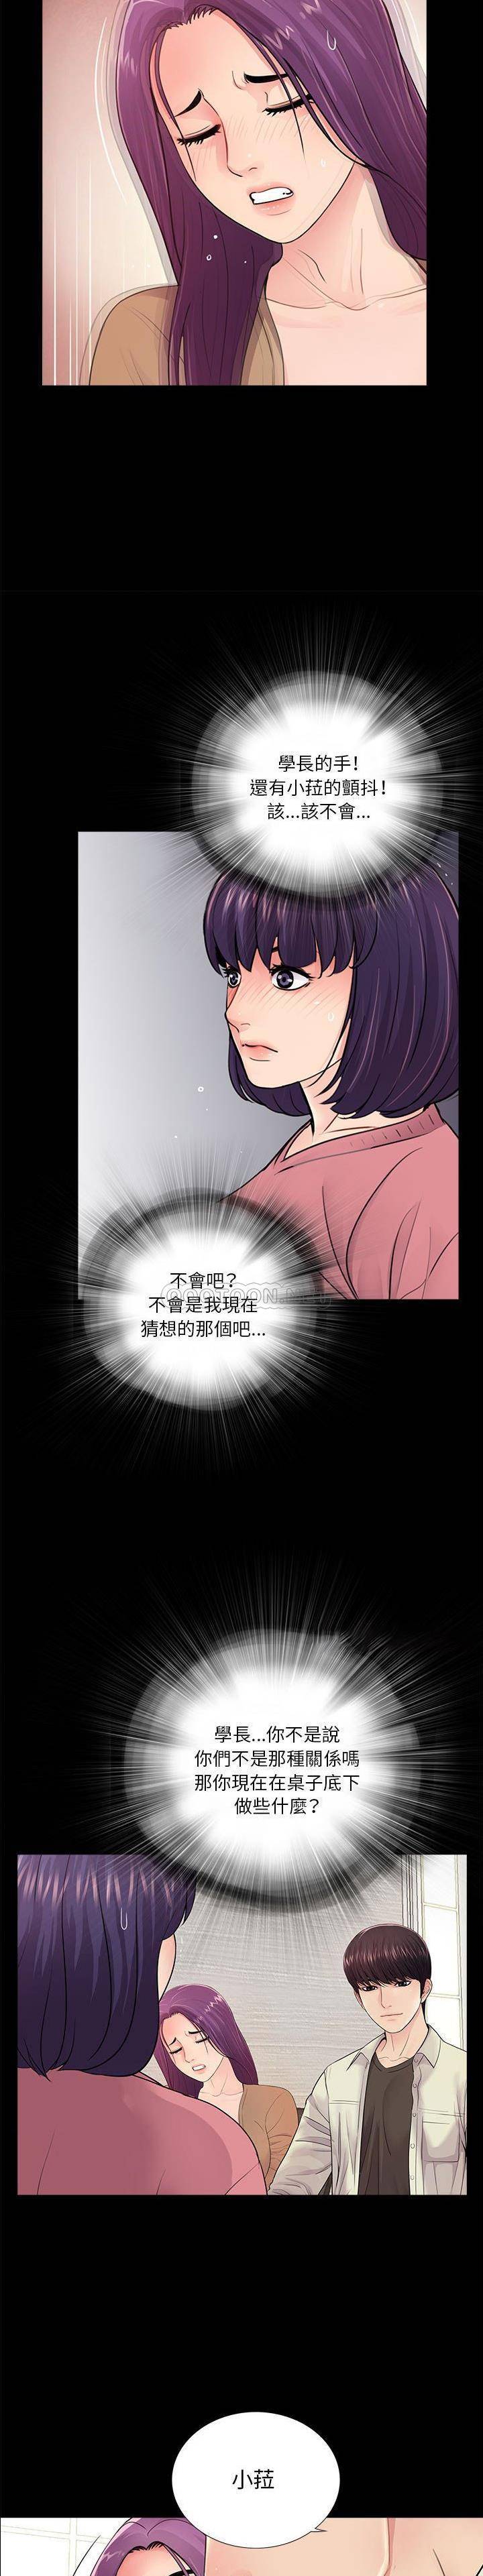 韩国污漫画 神秘復學生 第13话 15